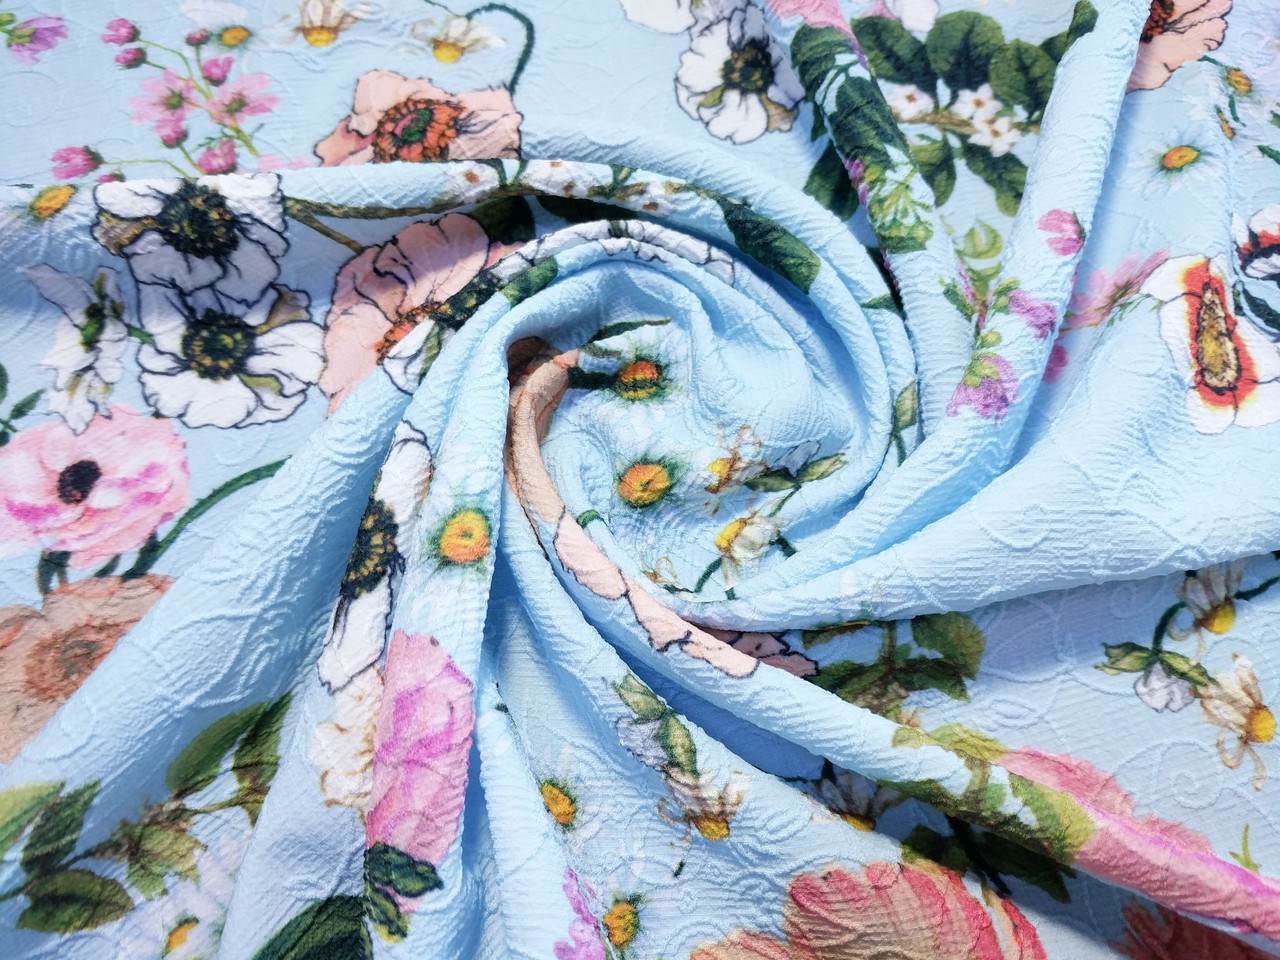 Жаккард креповий малюнок квітковий сад, блакитний